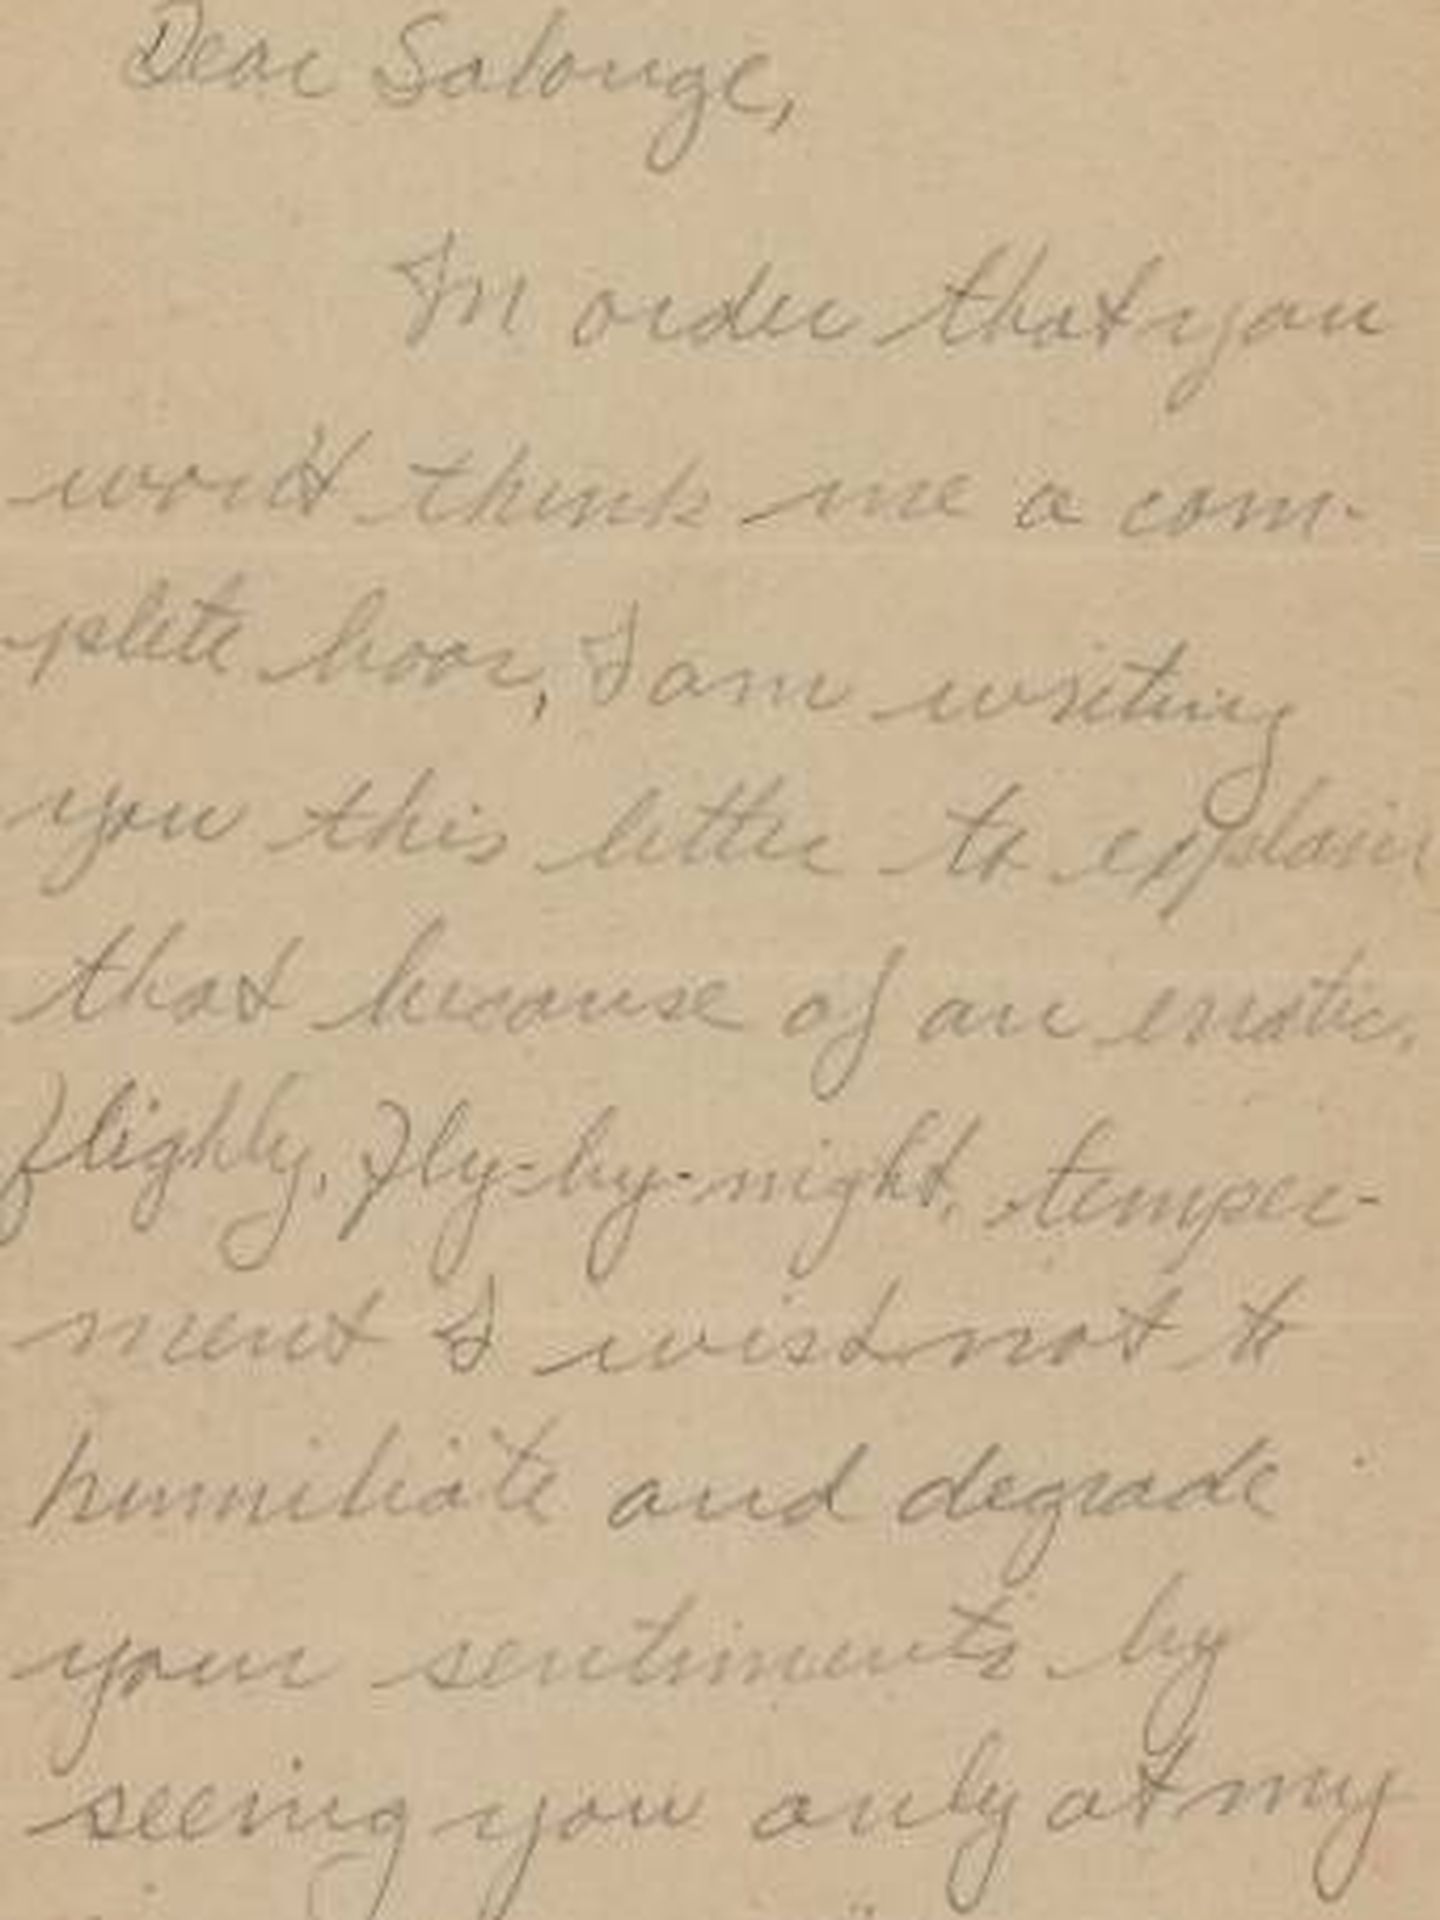 La carta de Brando a Podell. (RR Auctions)